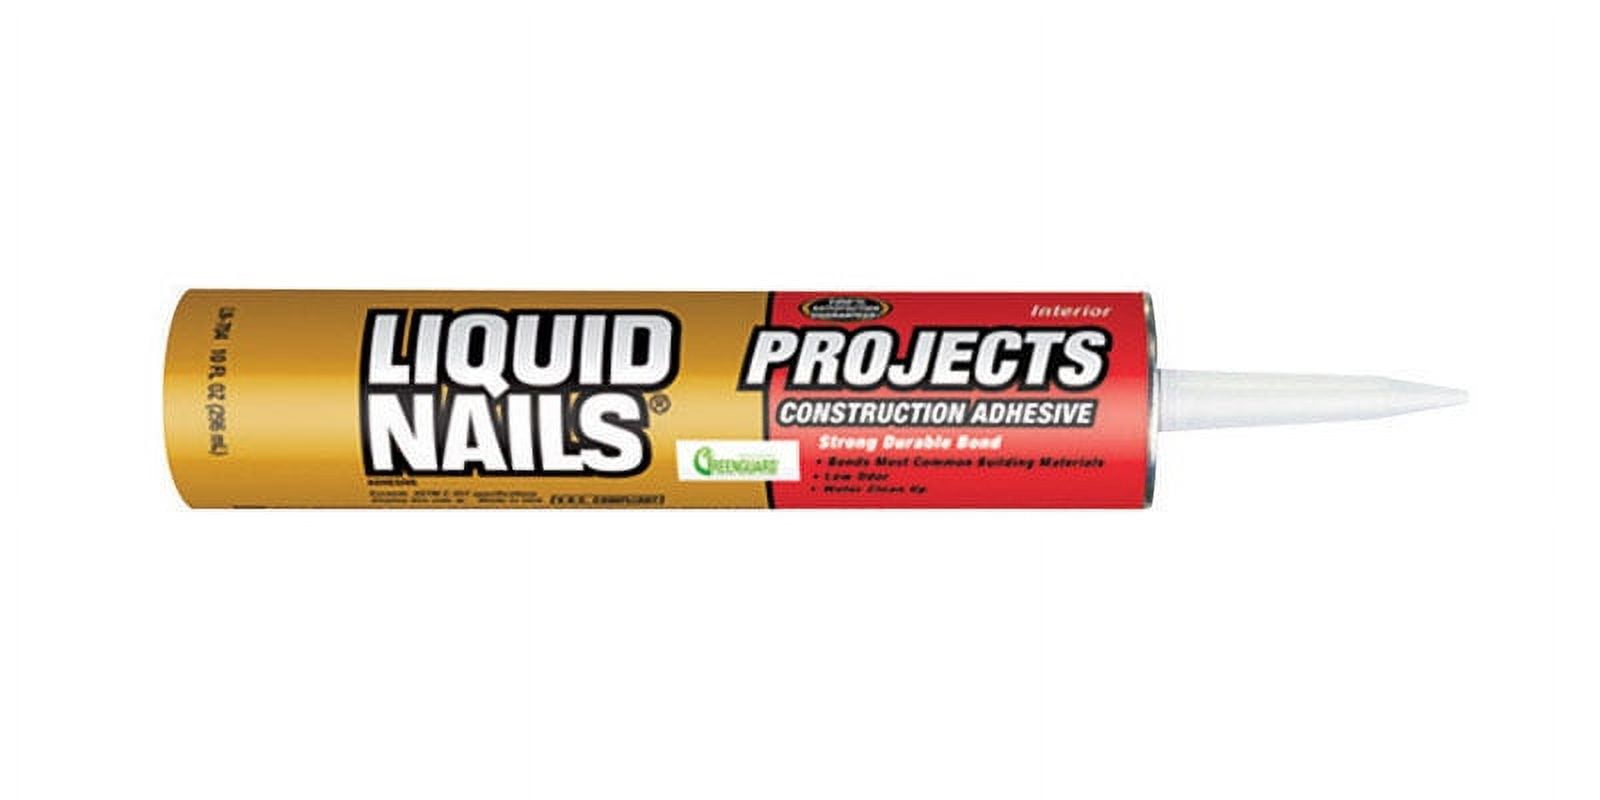 LIQUID NAILS Glues at Lowes.com